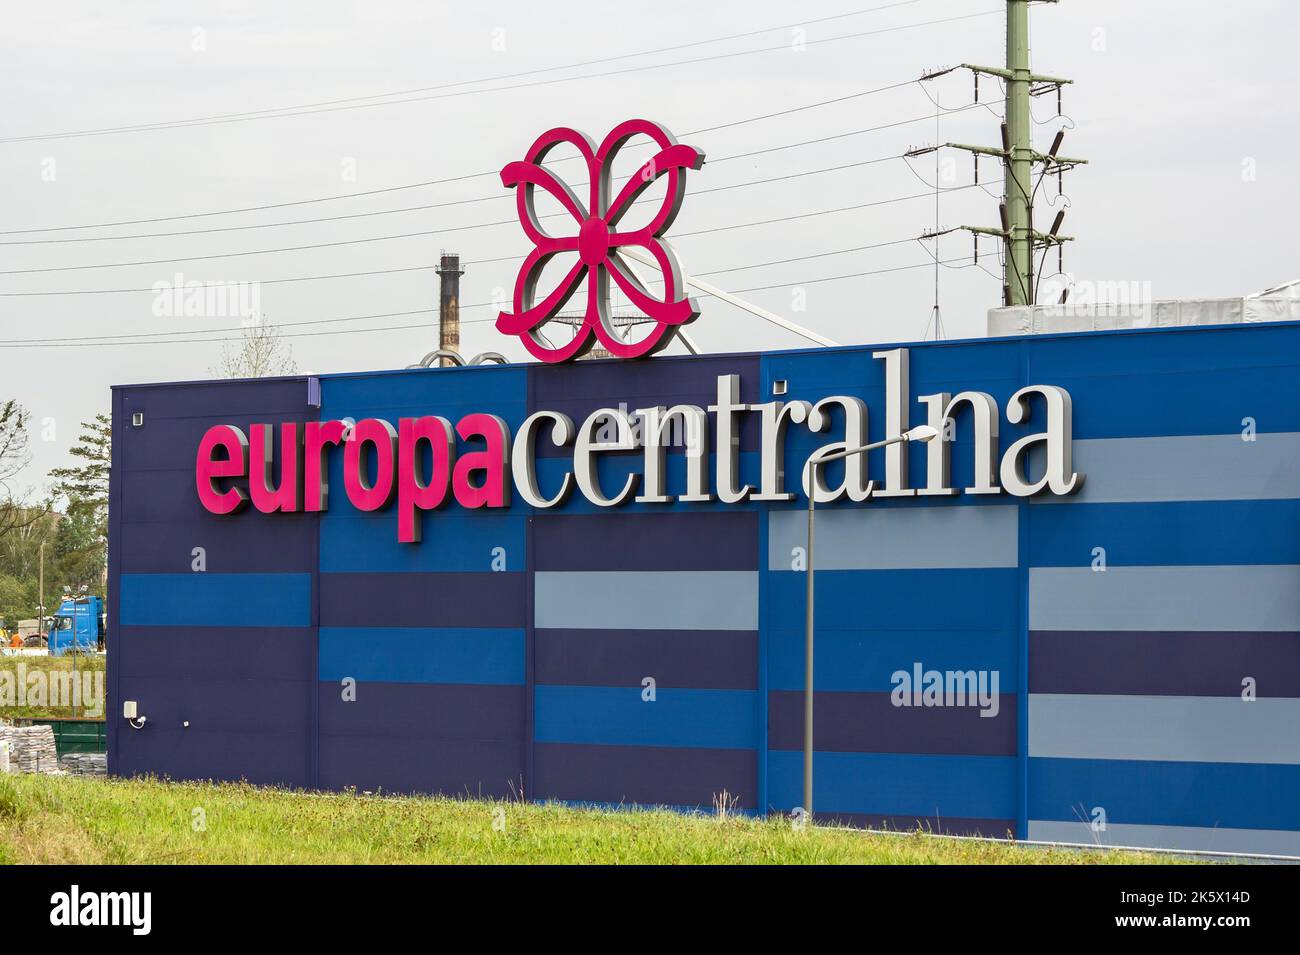 GLIWICE, POLEN - 29. JULI 2022: Einkaufszentrum Europa Centralna mit dem Logo in Gliwice, wo sich viele Geschäfte befinden Stockfoto